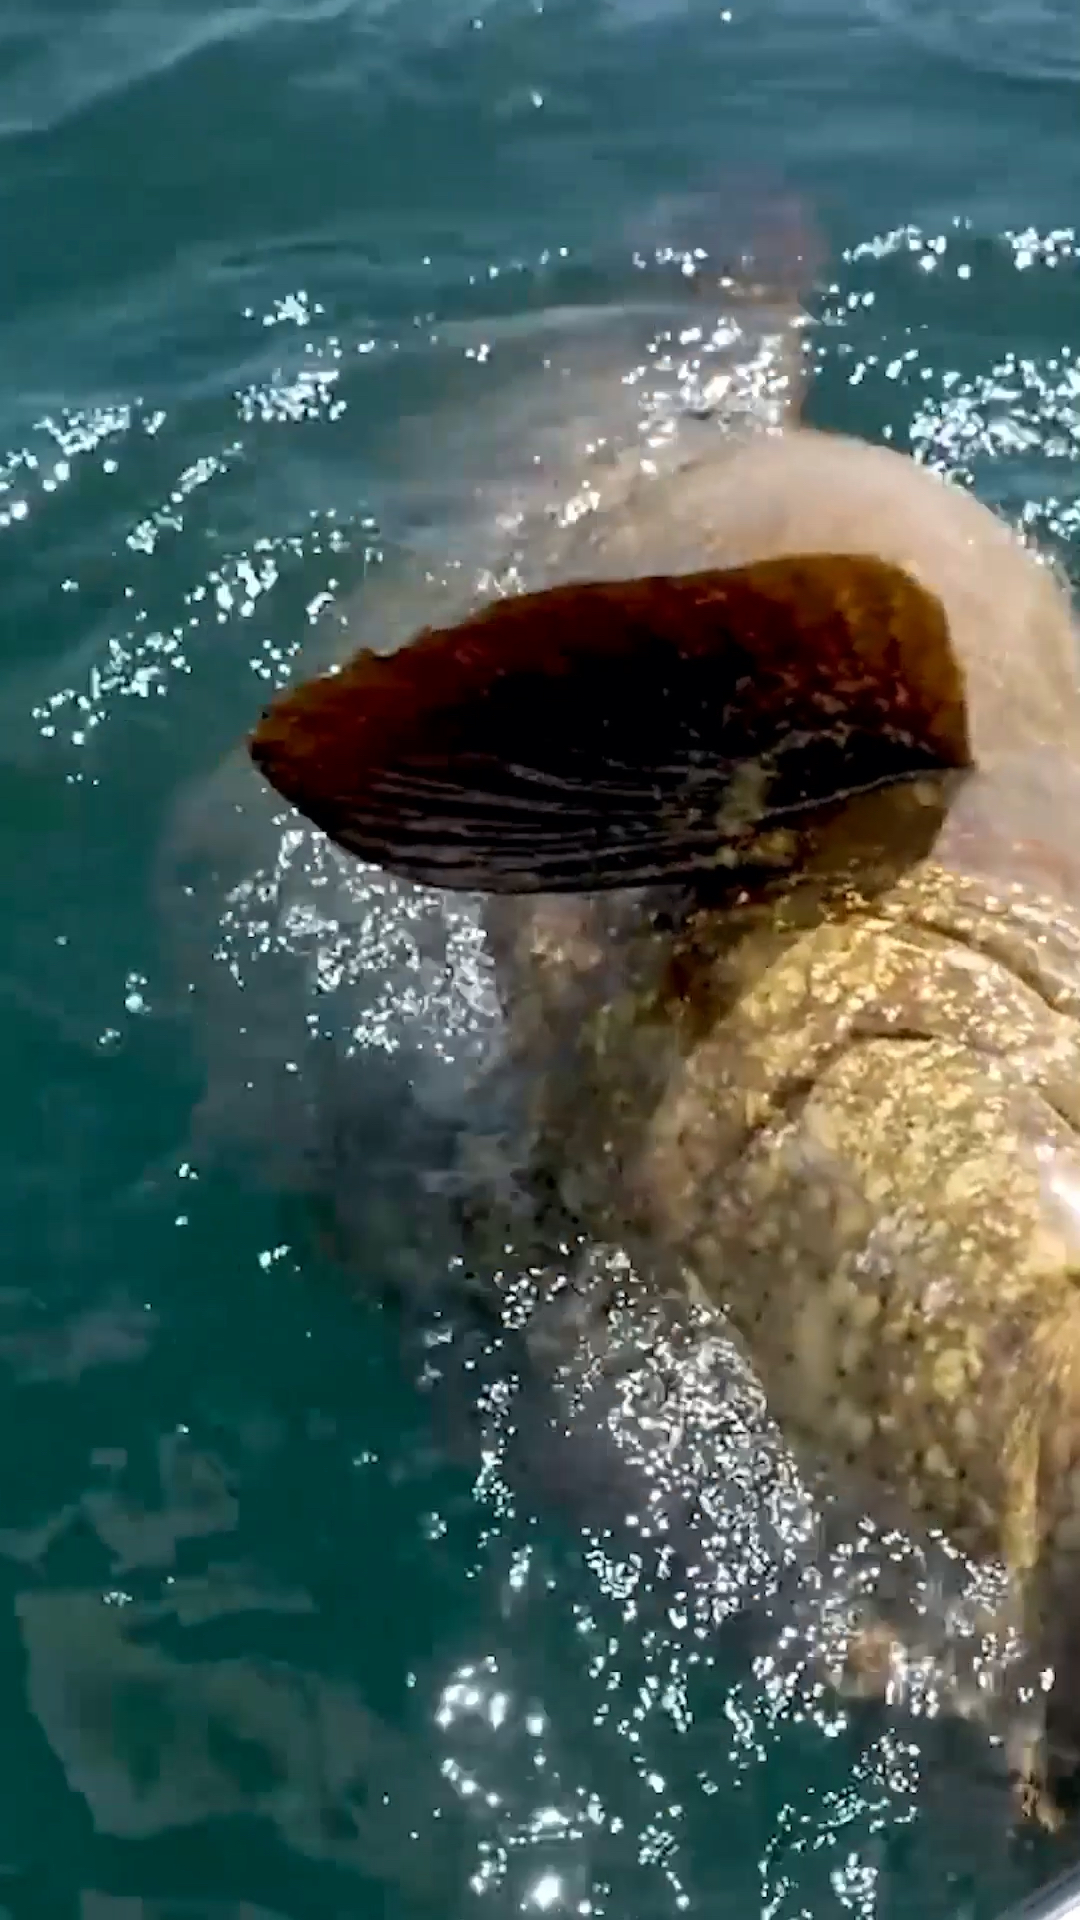 龙趸,也叫巨型石斑鱼,大型名贵食用鱼类